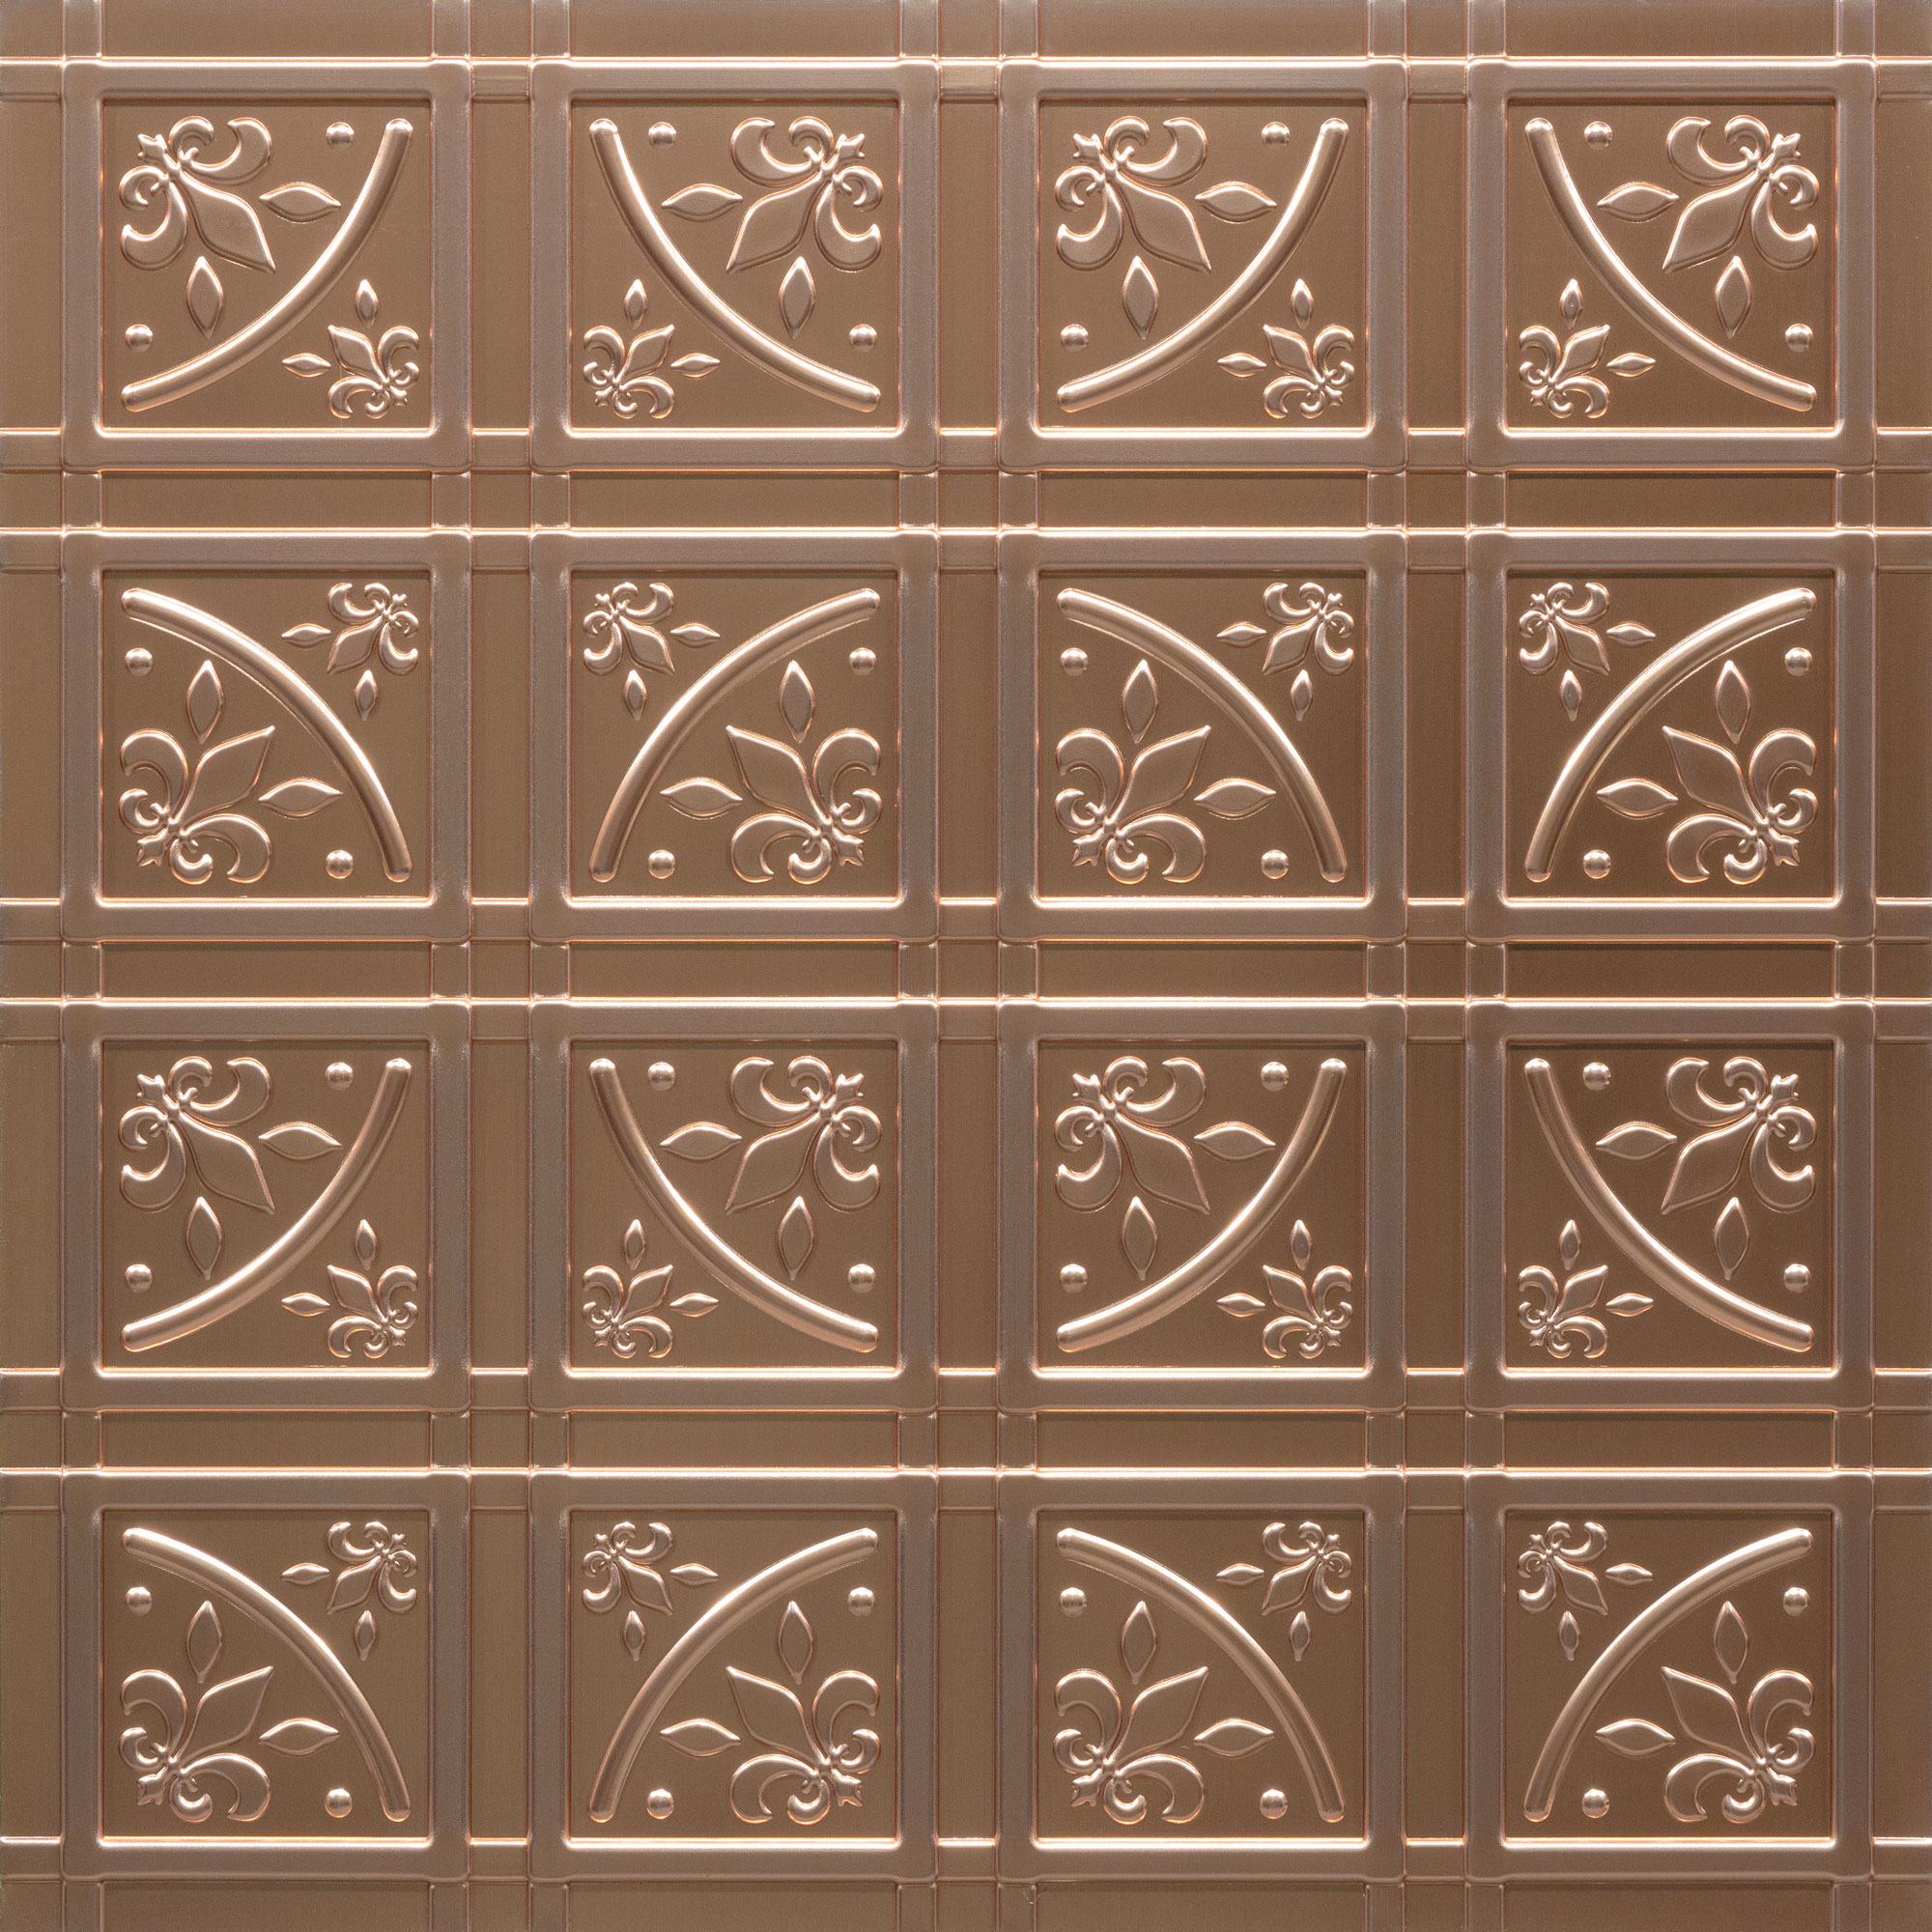 Lafayette Ceiling Tiles